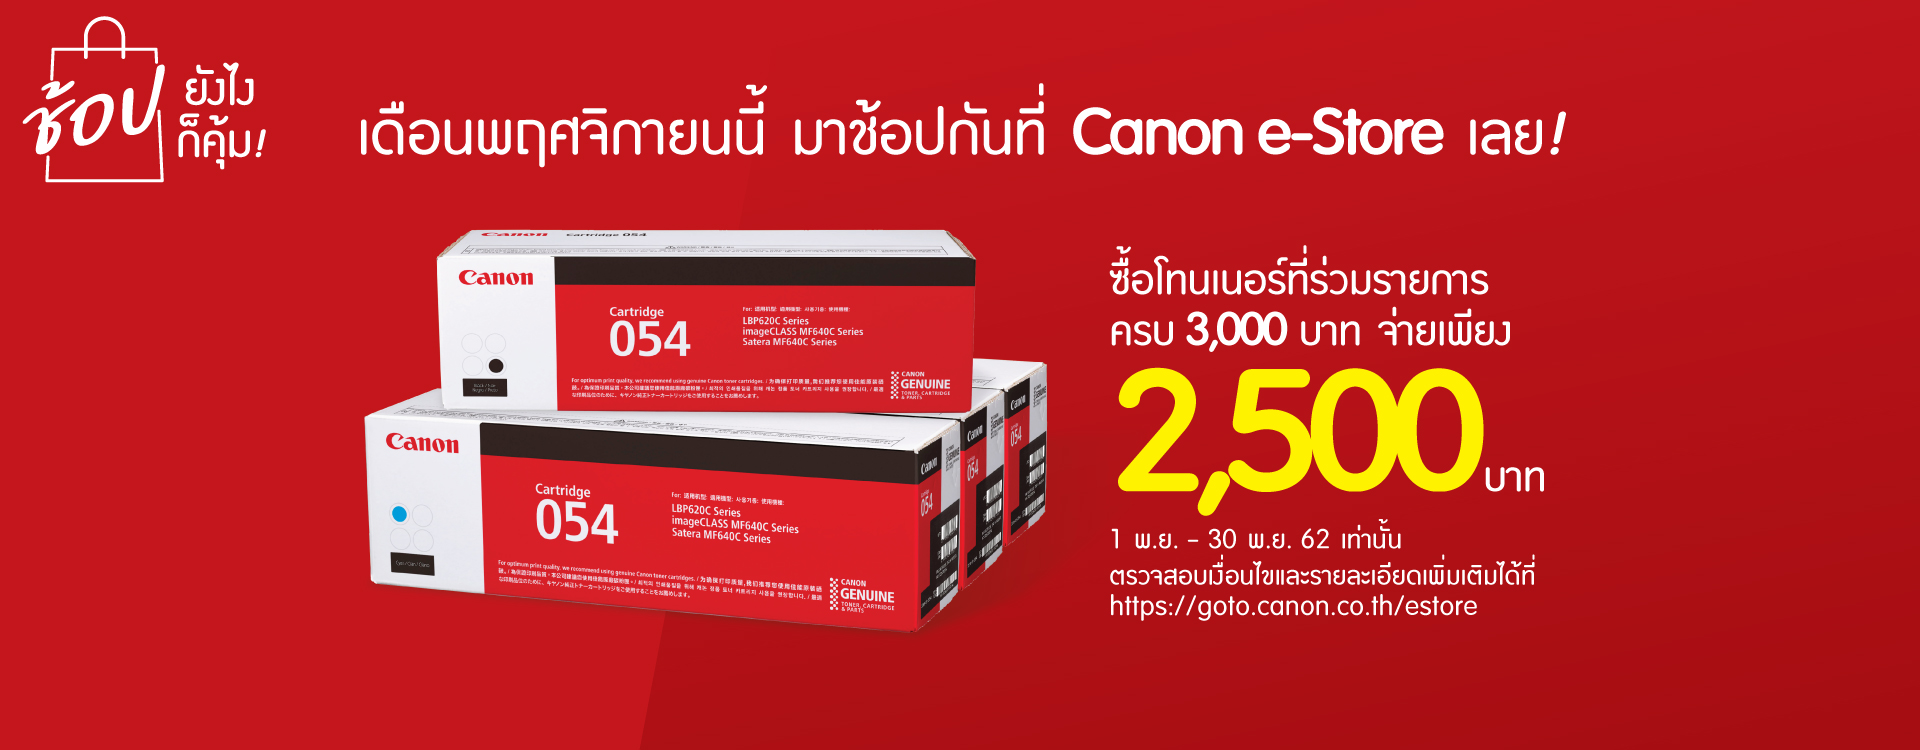 Home Canon Thailand - roblox site 61 omni card roblox tracker